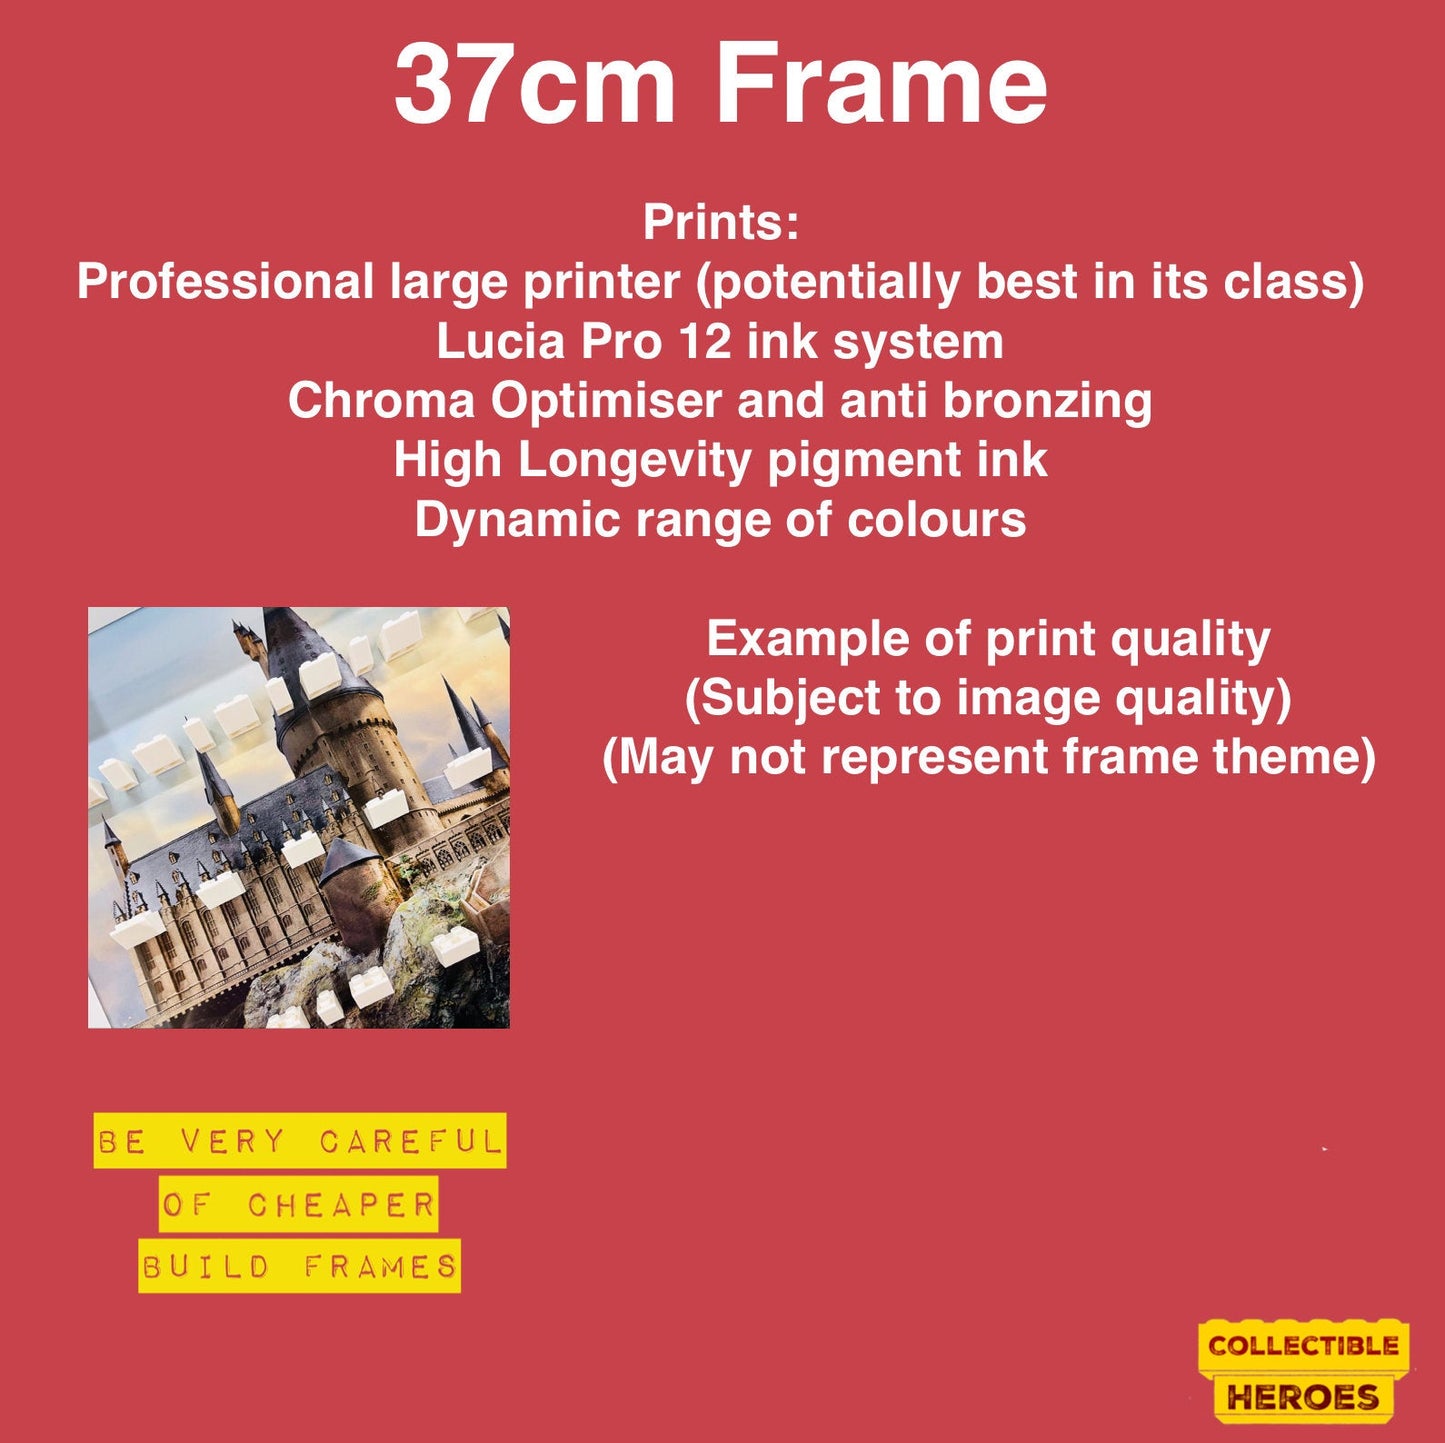 Display Frame Case For General Lego Minifigures  No Figures 37cm Blue